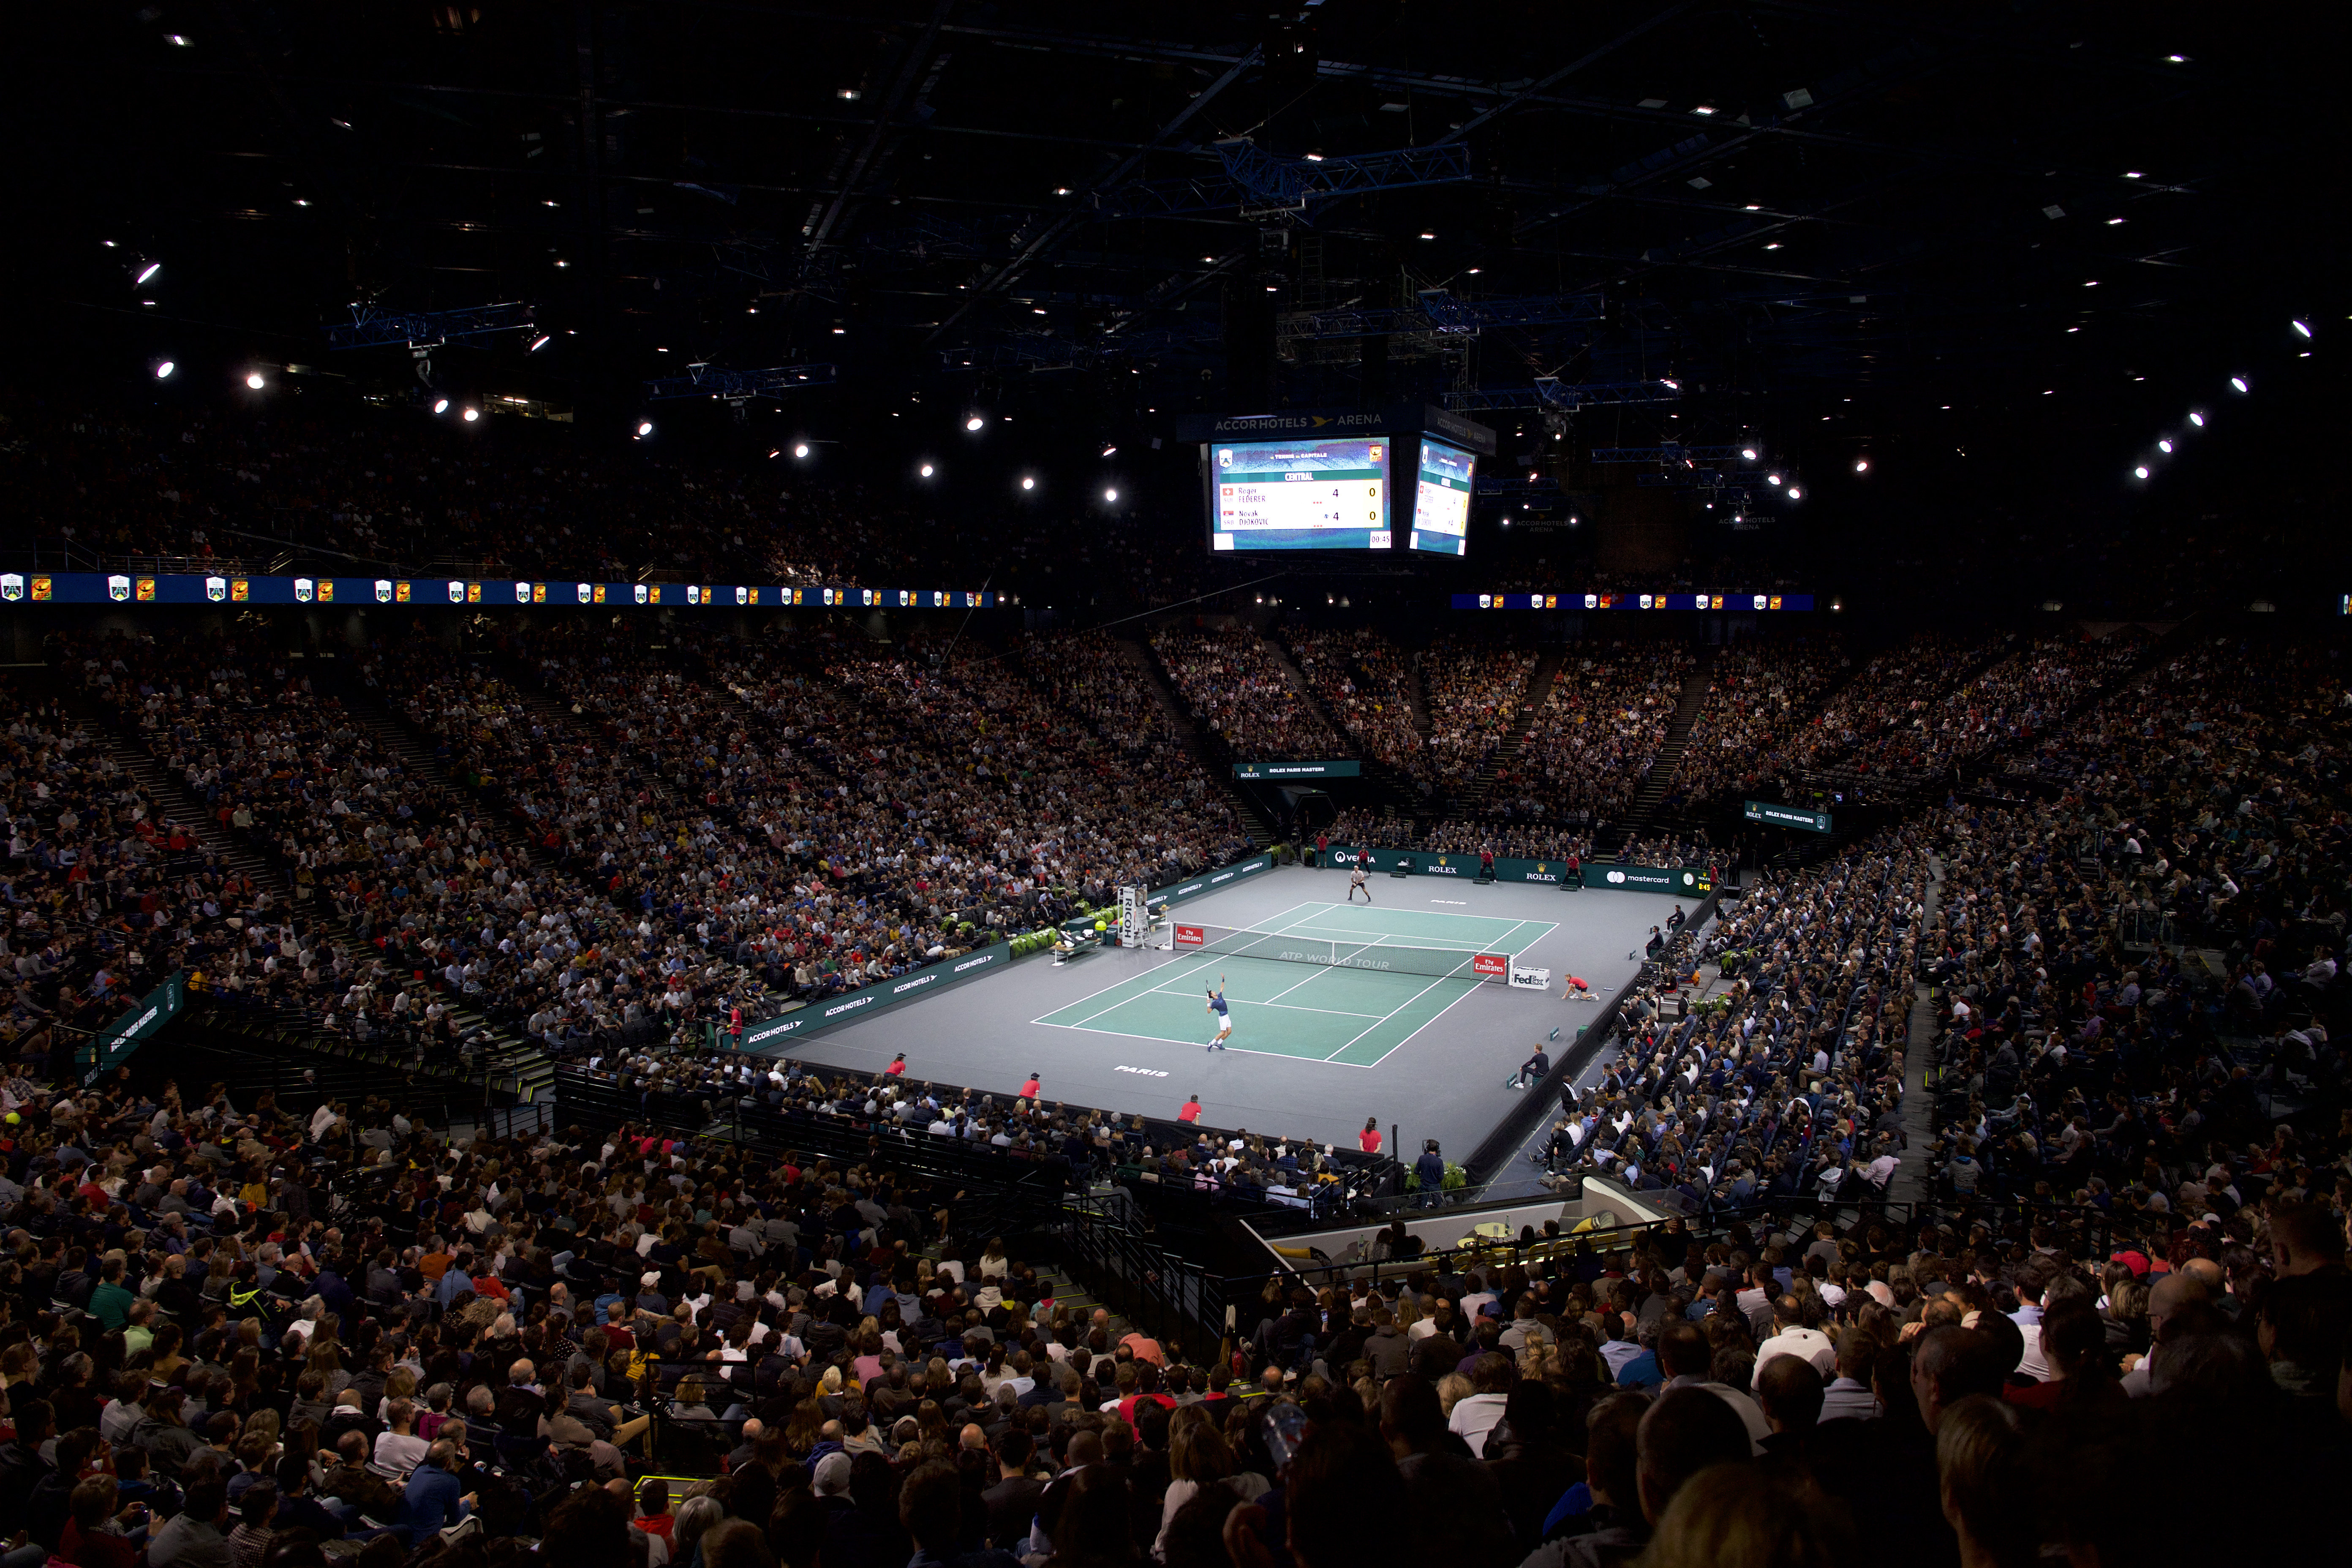 Rolex Paris Masters 2023, Rolex and Tennis